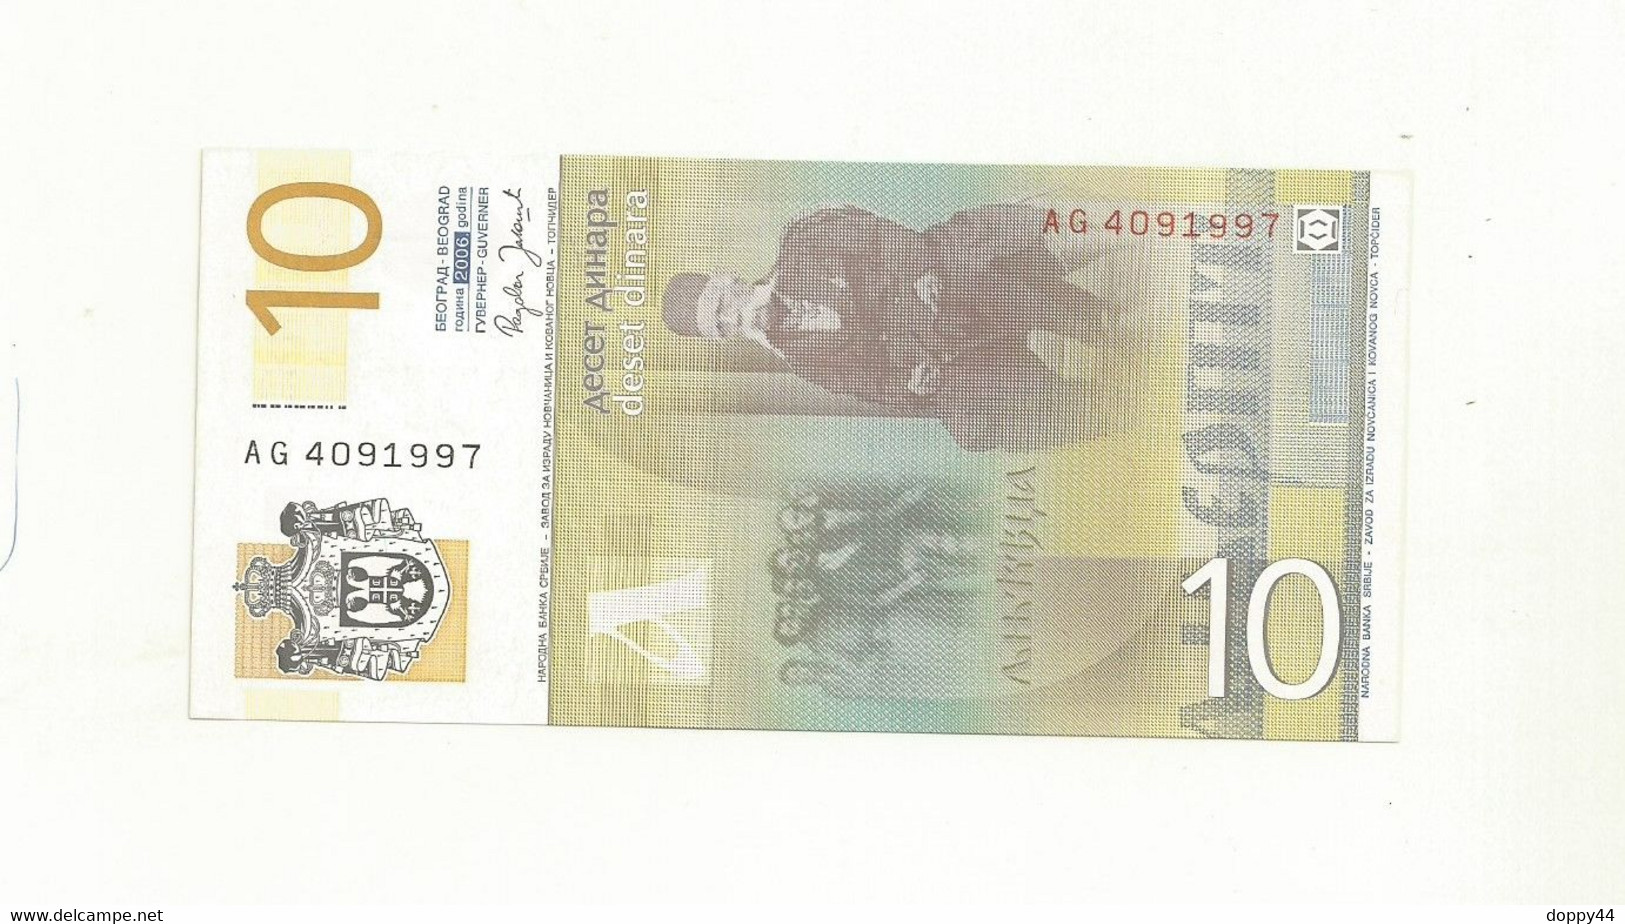 BILLET NEUF SERBIE 10 DINAR EMIS EN 2006. - Serbie